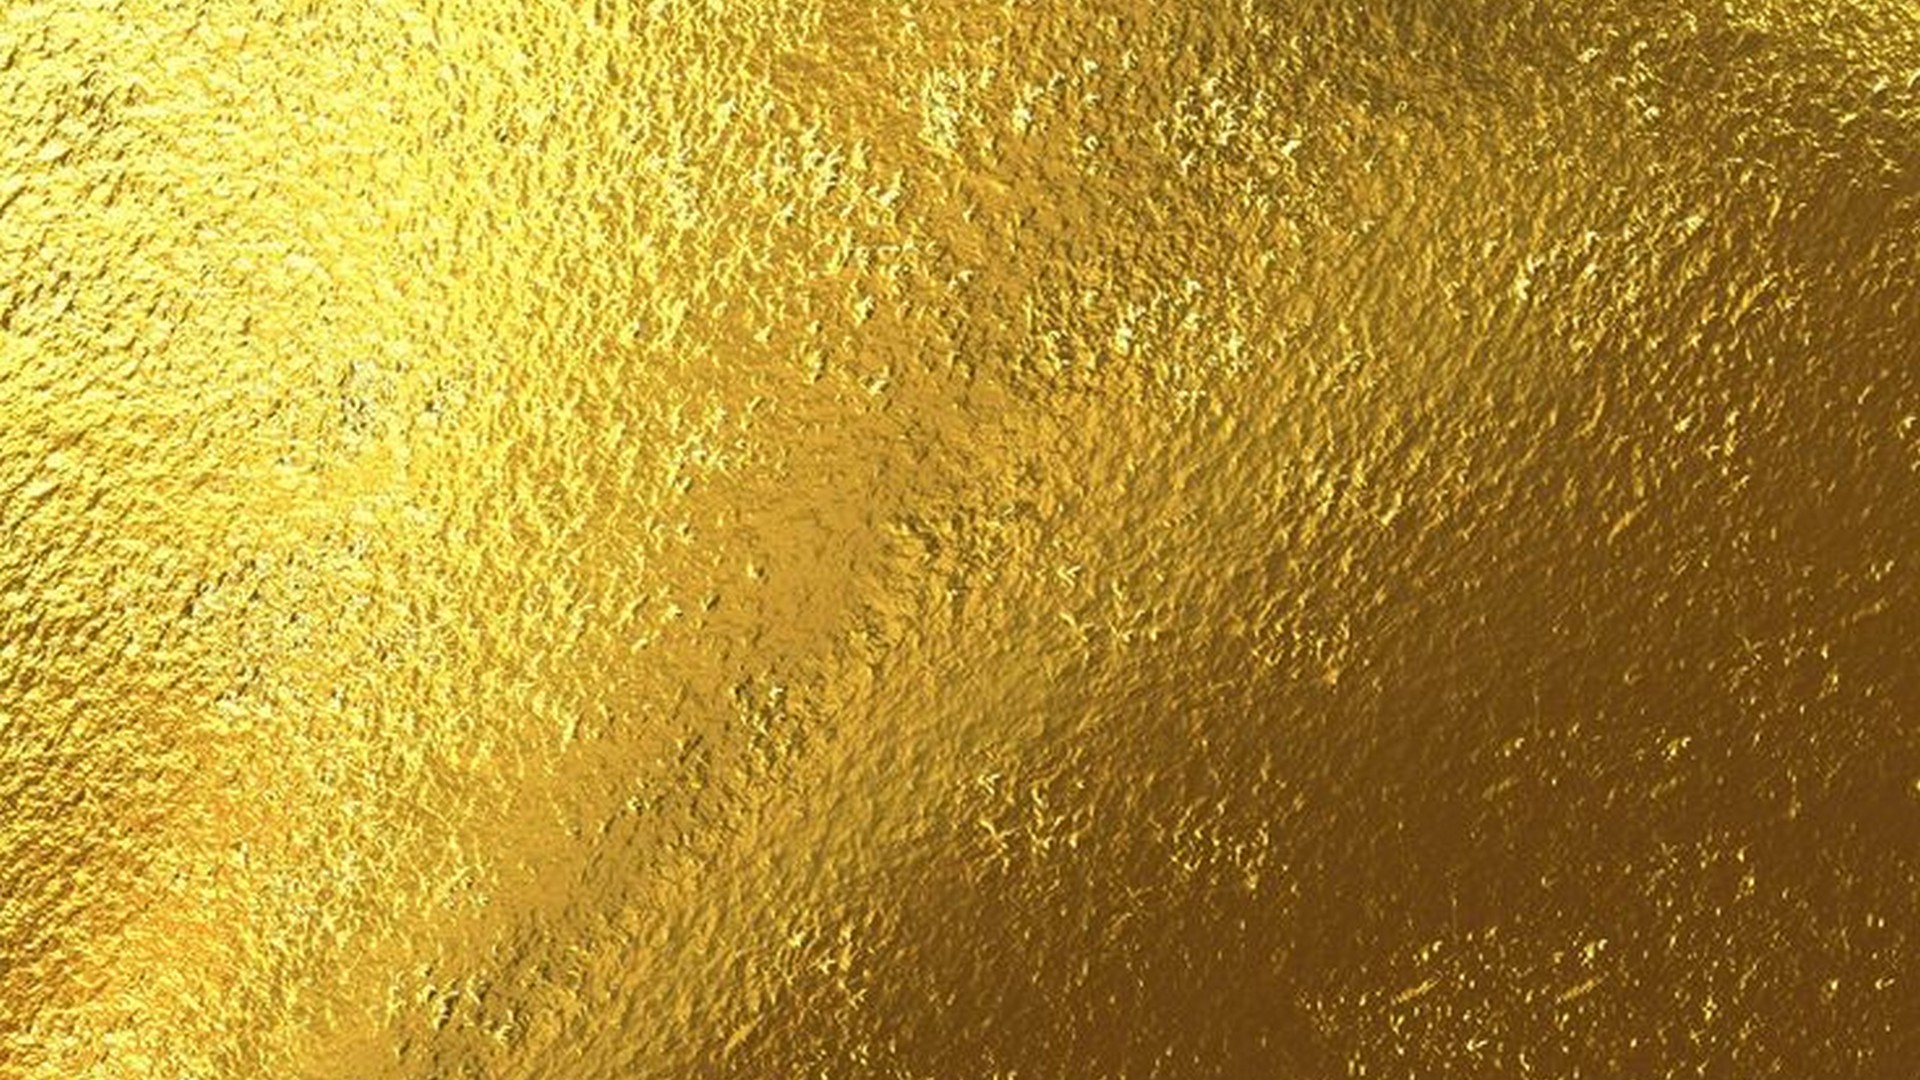 Wallpaper HD Golden 1920x1080